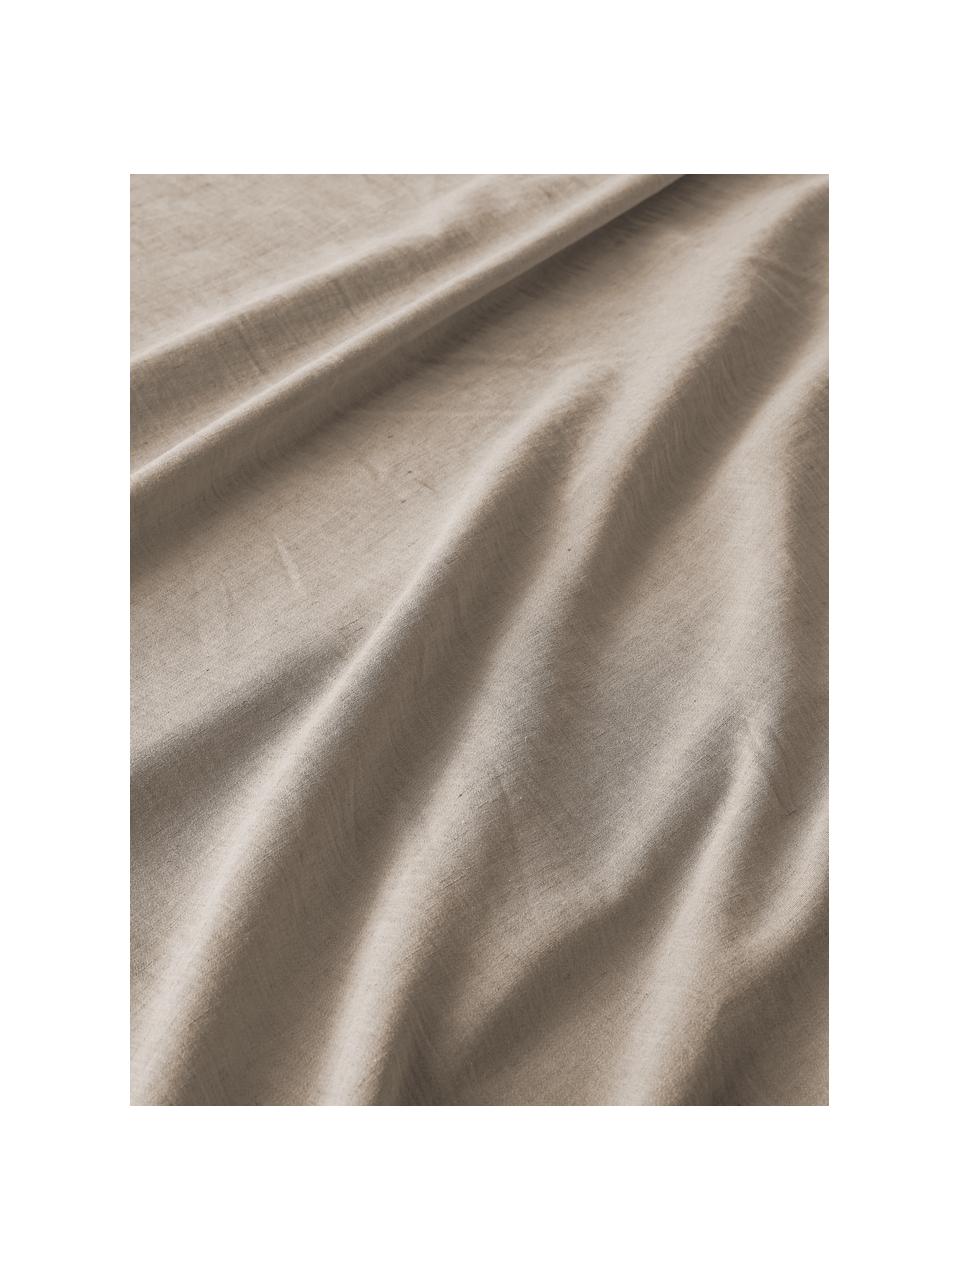 Poszwa na kołdrę z bawełny Amita, Taupe, S 200 x D 200 cm